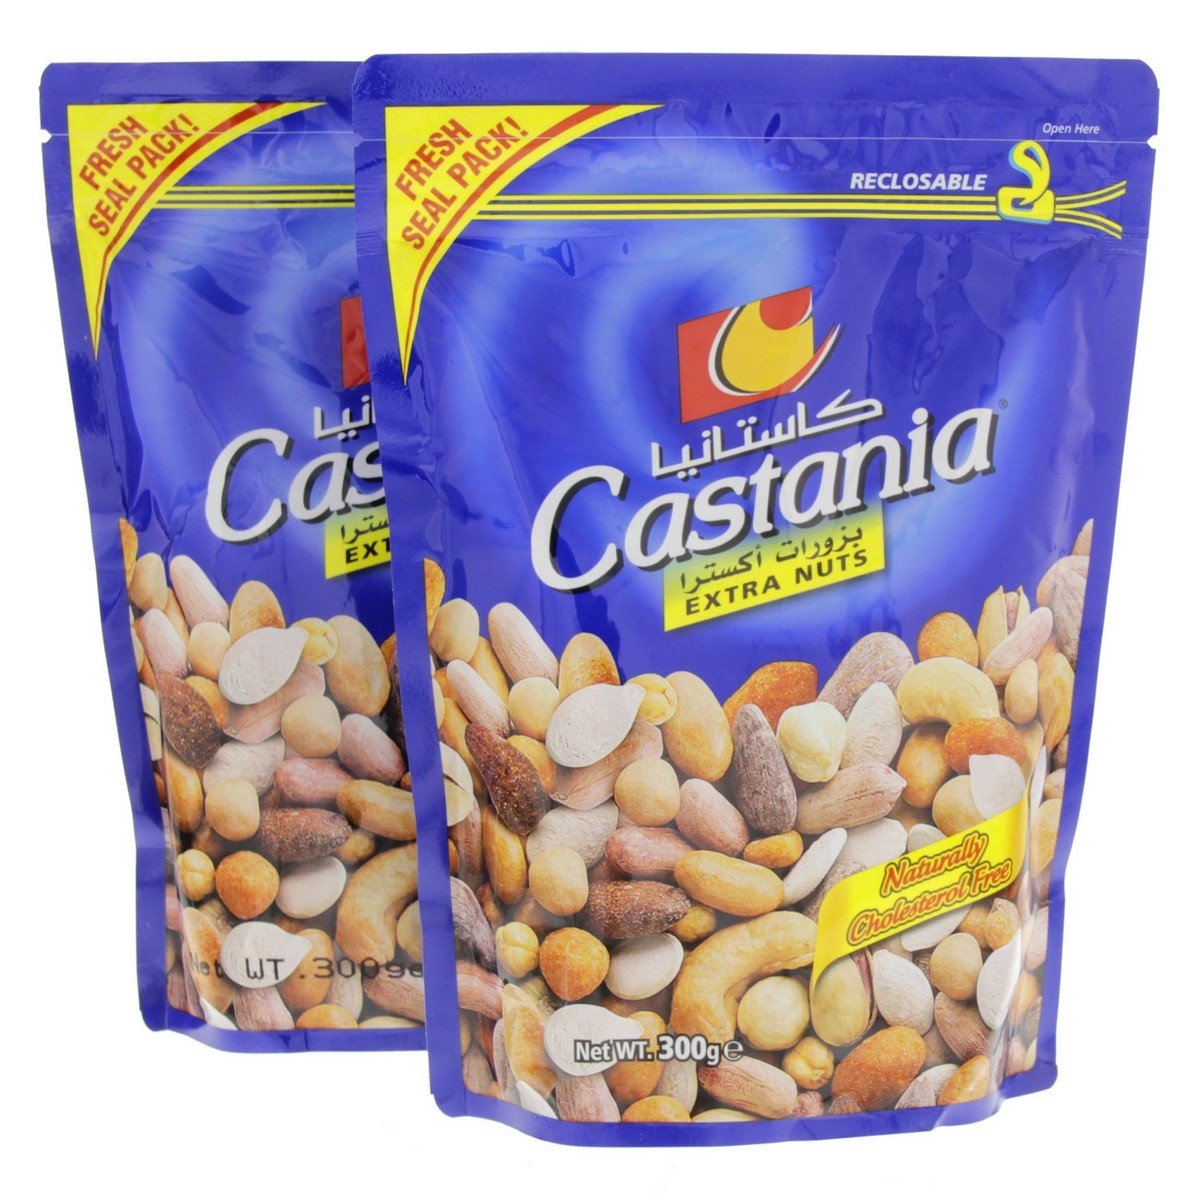 Castania Mixed Nuts 300g x 2pcs